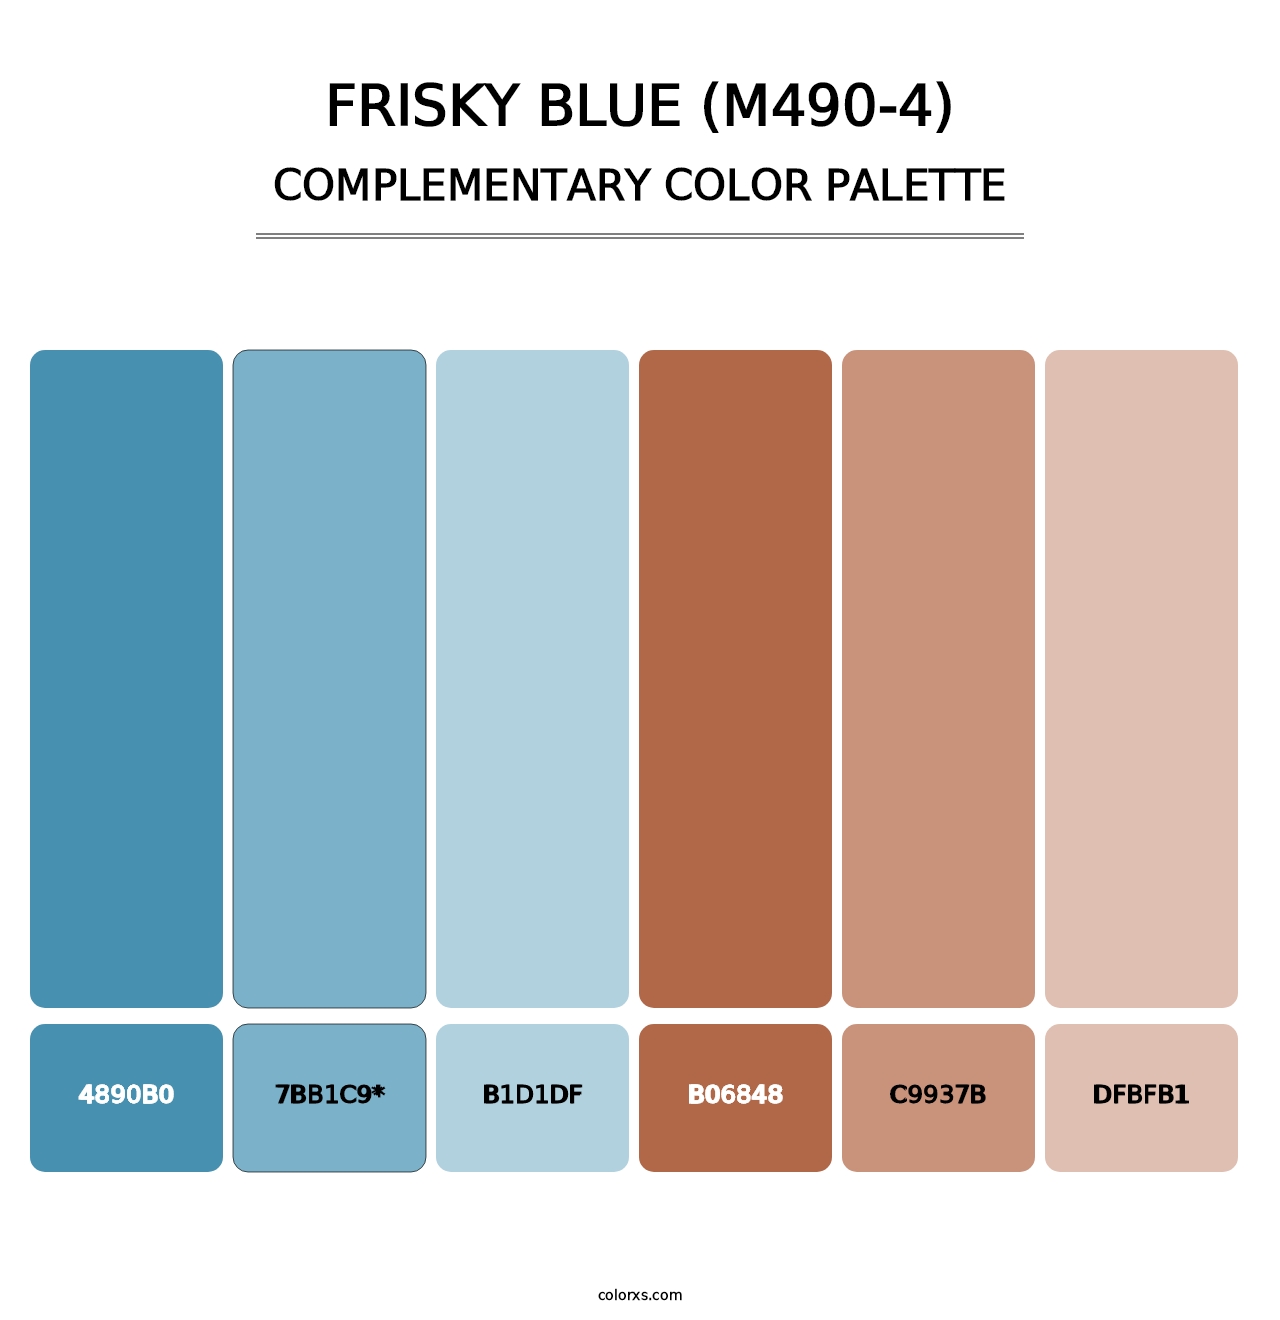 Frisky Blue (M490-4) - Complementary Color Palette